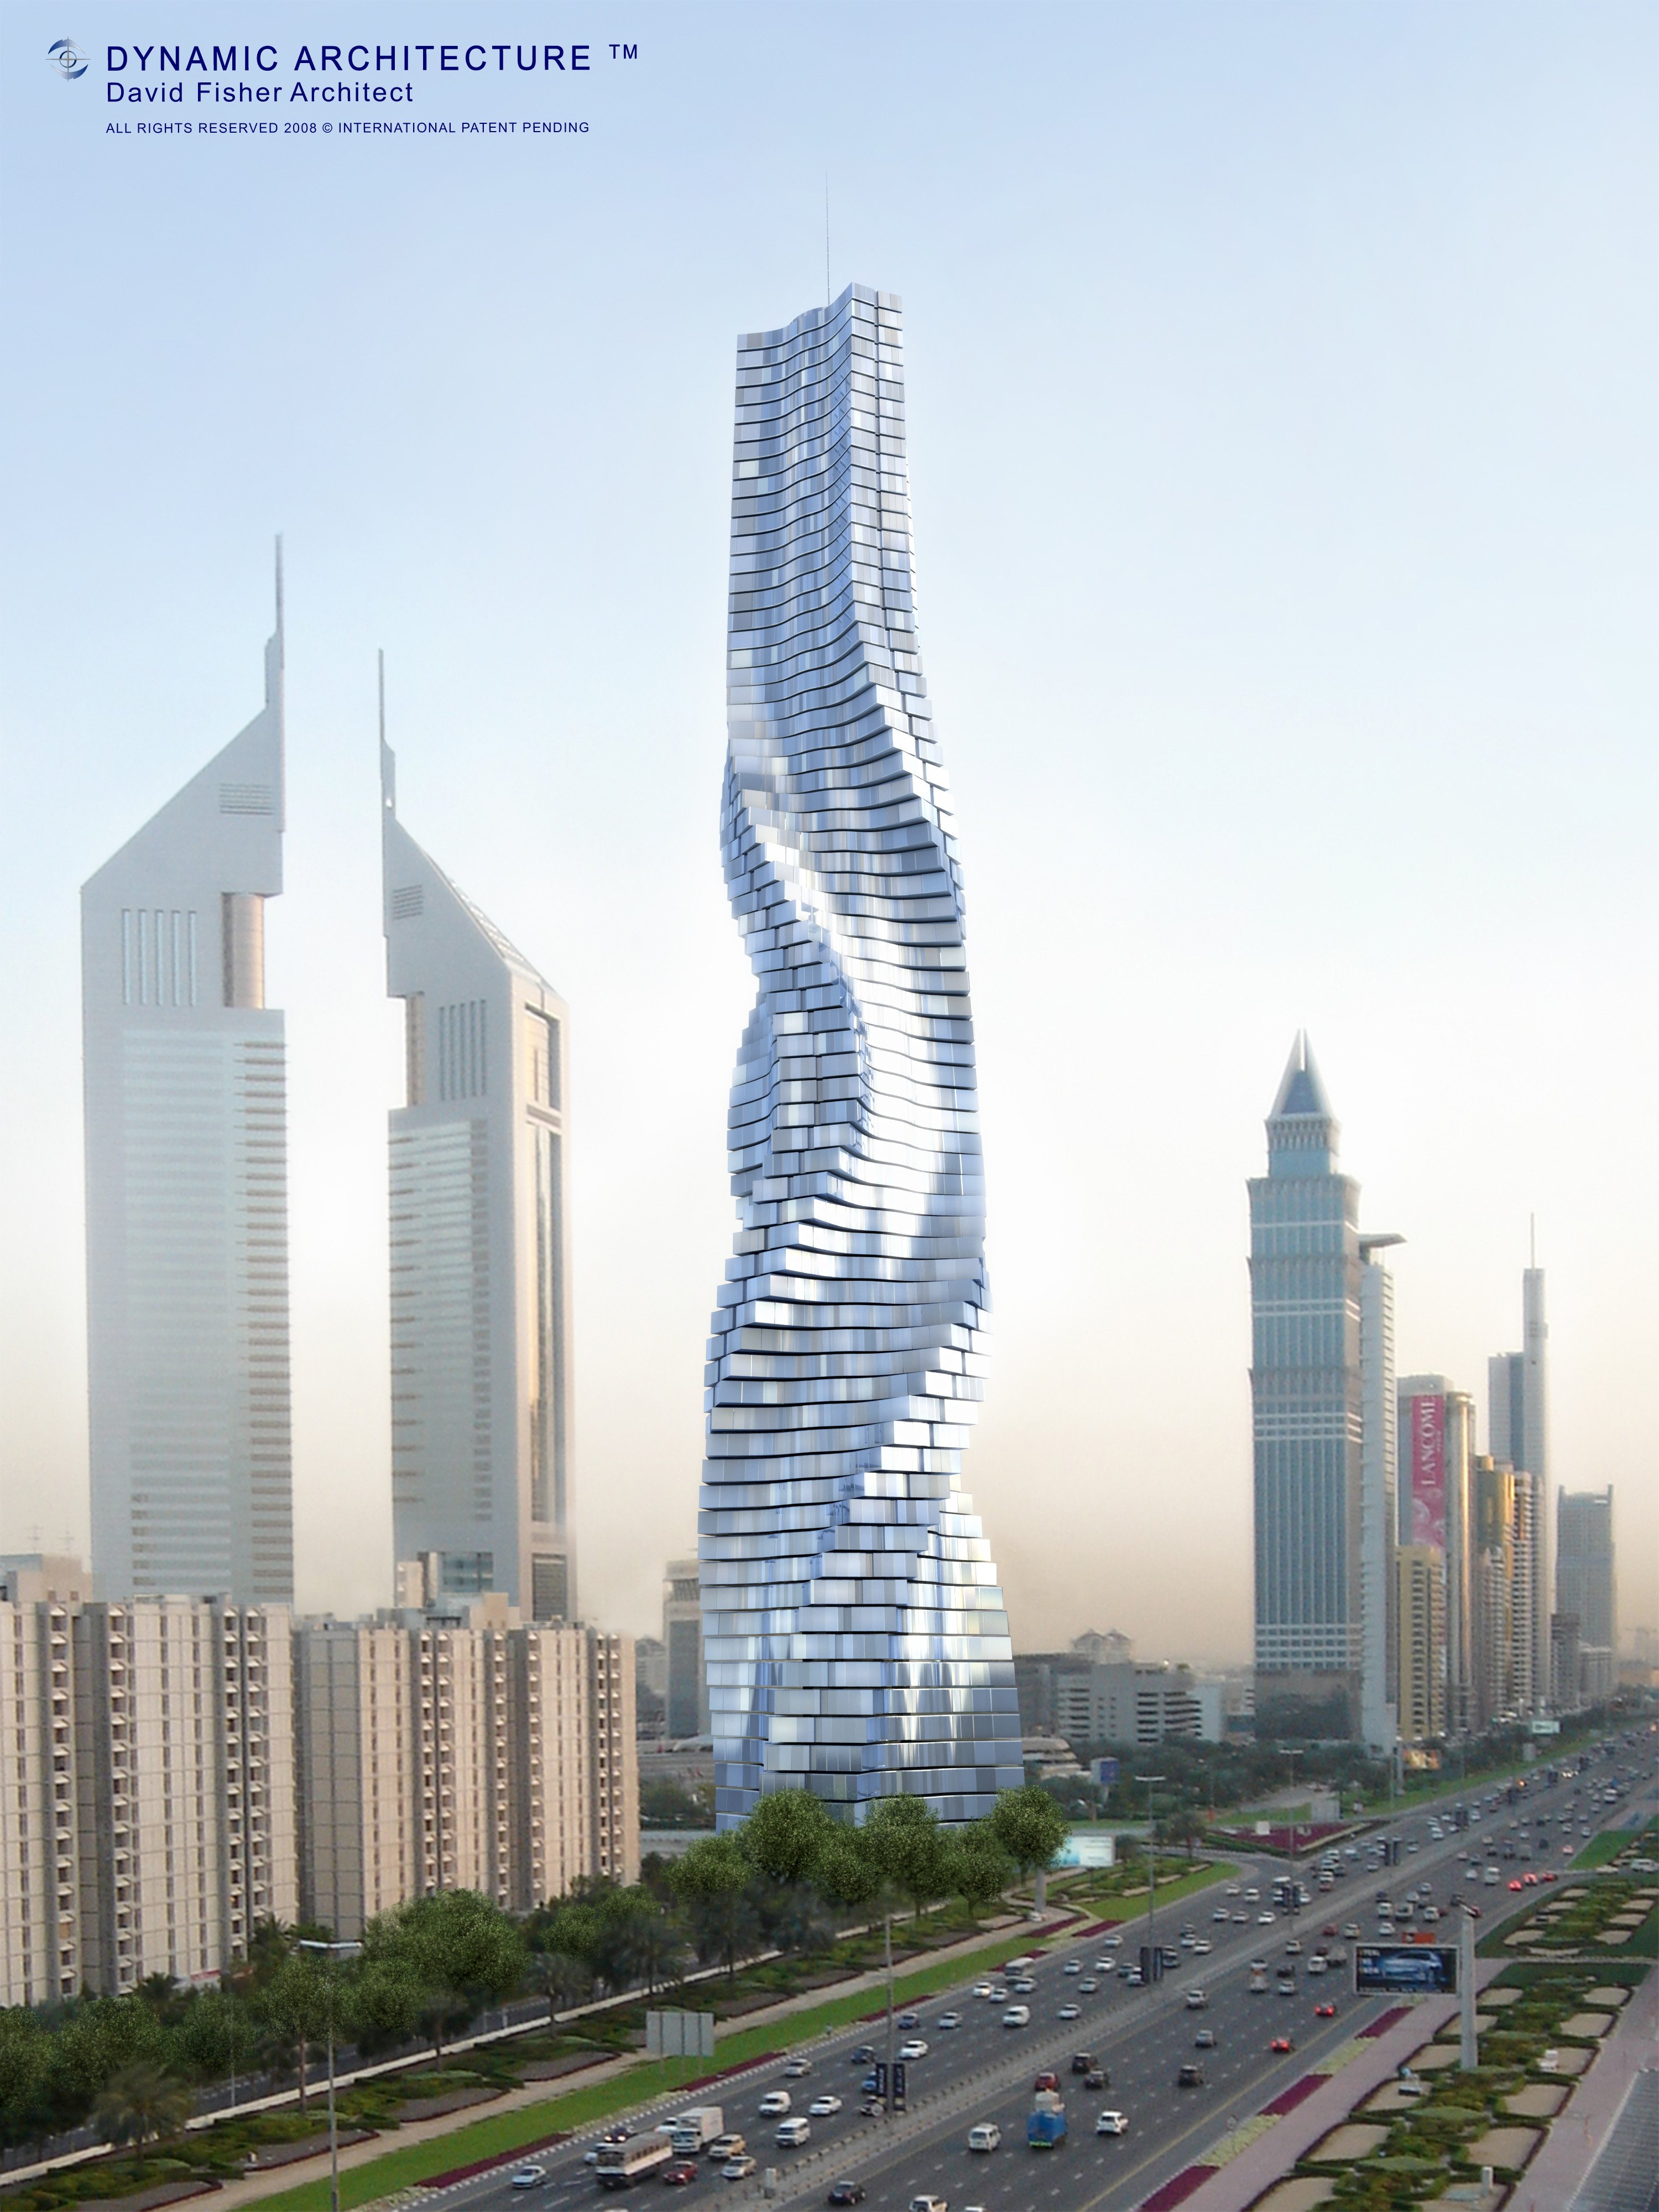 Дом 160 этажей. Вращающаяся башня Дэвида Фишера в Дубае. Дубай товерс Дубай. Небоскрёб Бурдж-Халифа в Дубае. Da Vinci Tower в Дубае (Архитектор Дэвид Фишер).